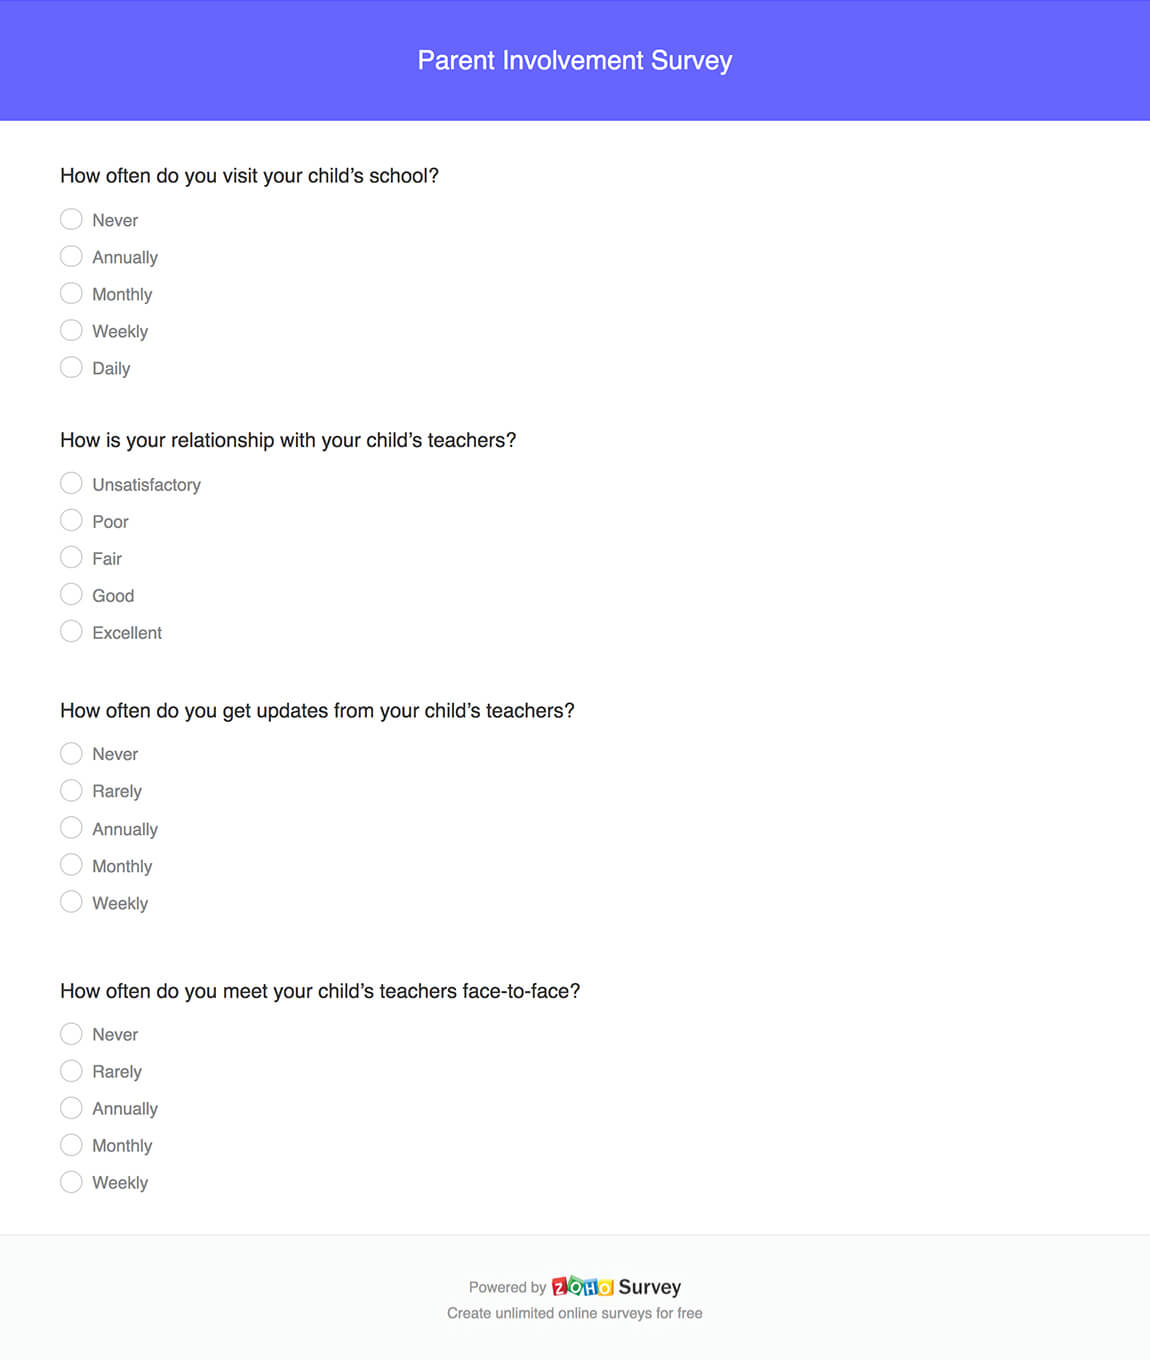 Parent involvement survey questionnaire template